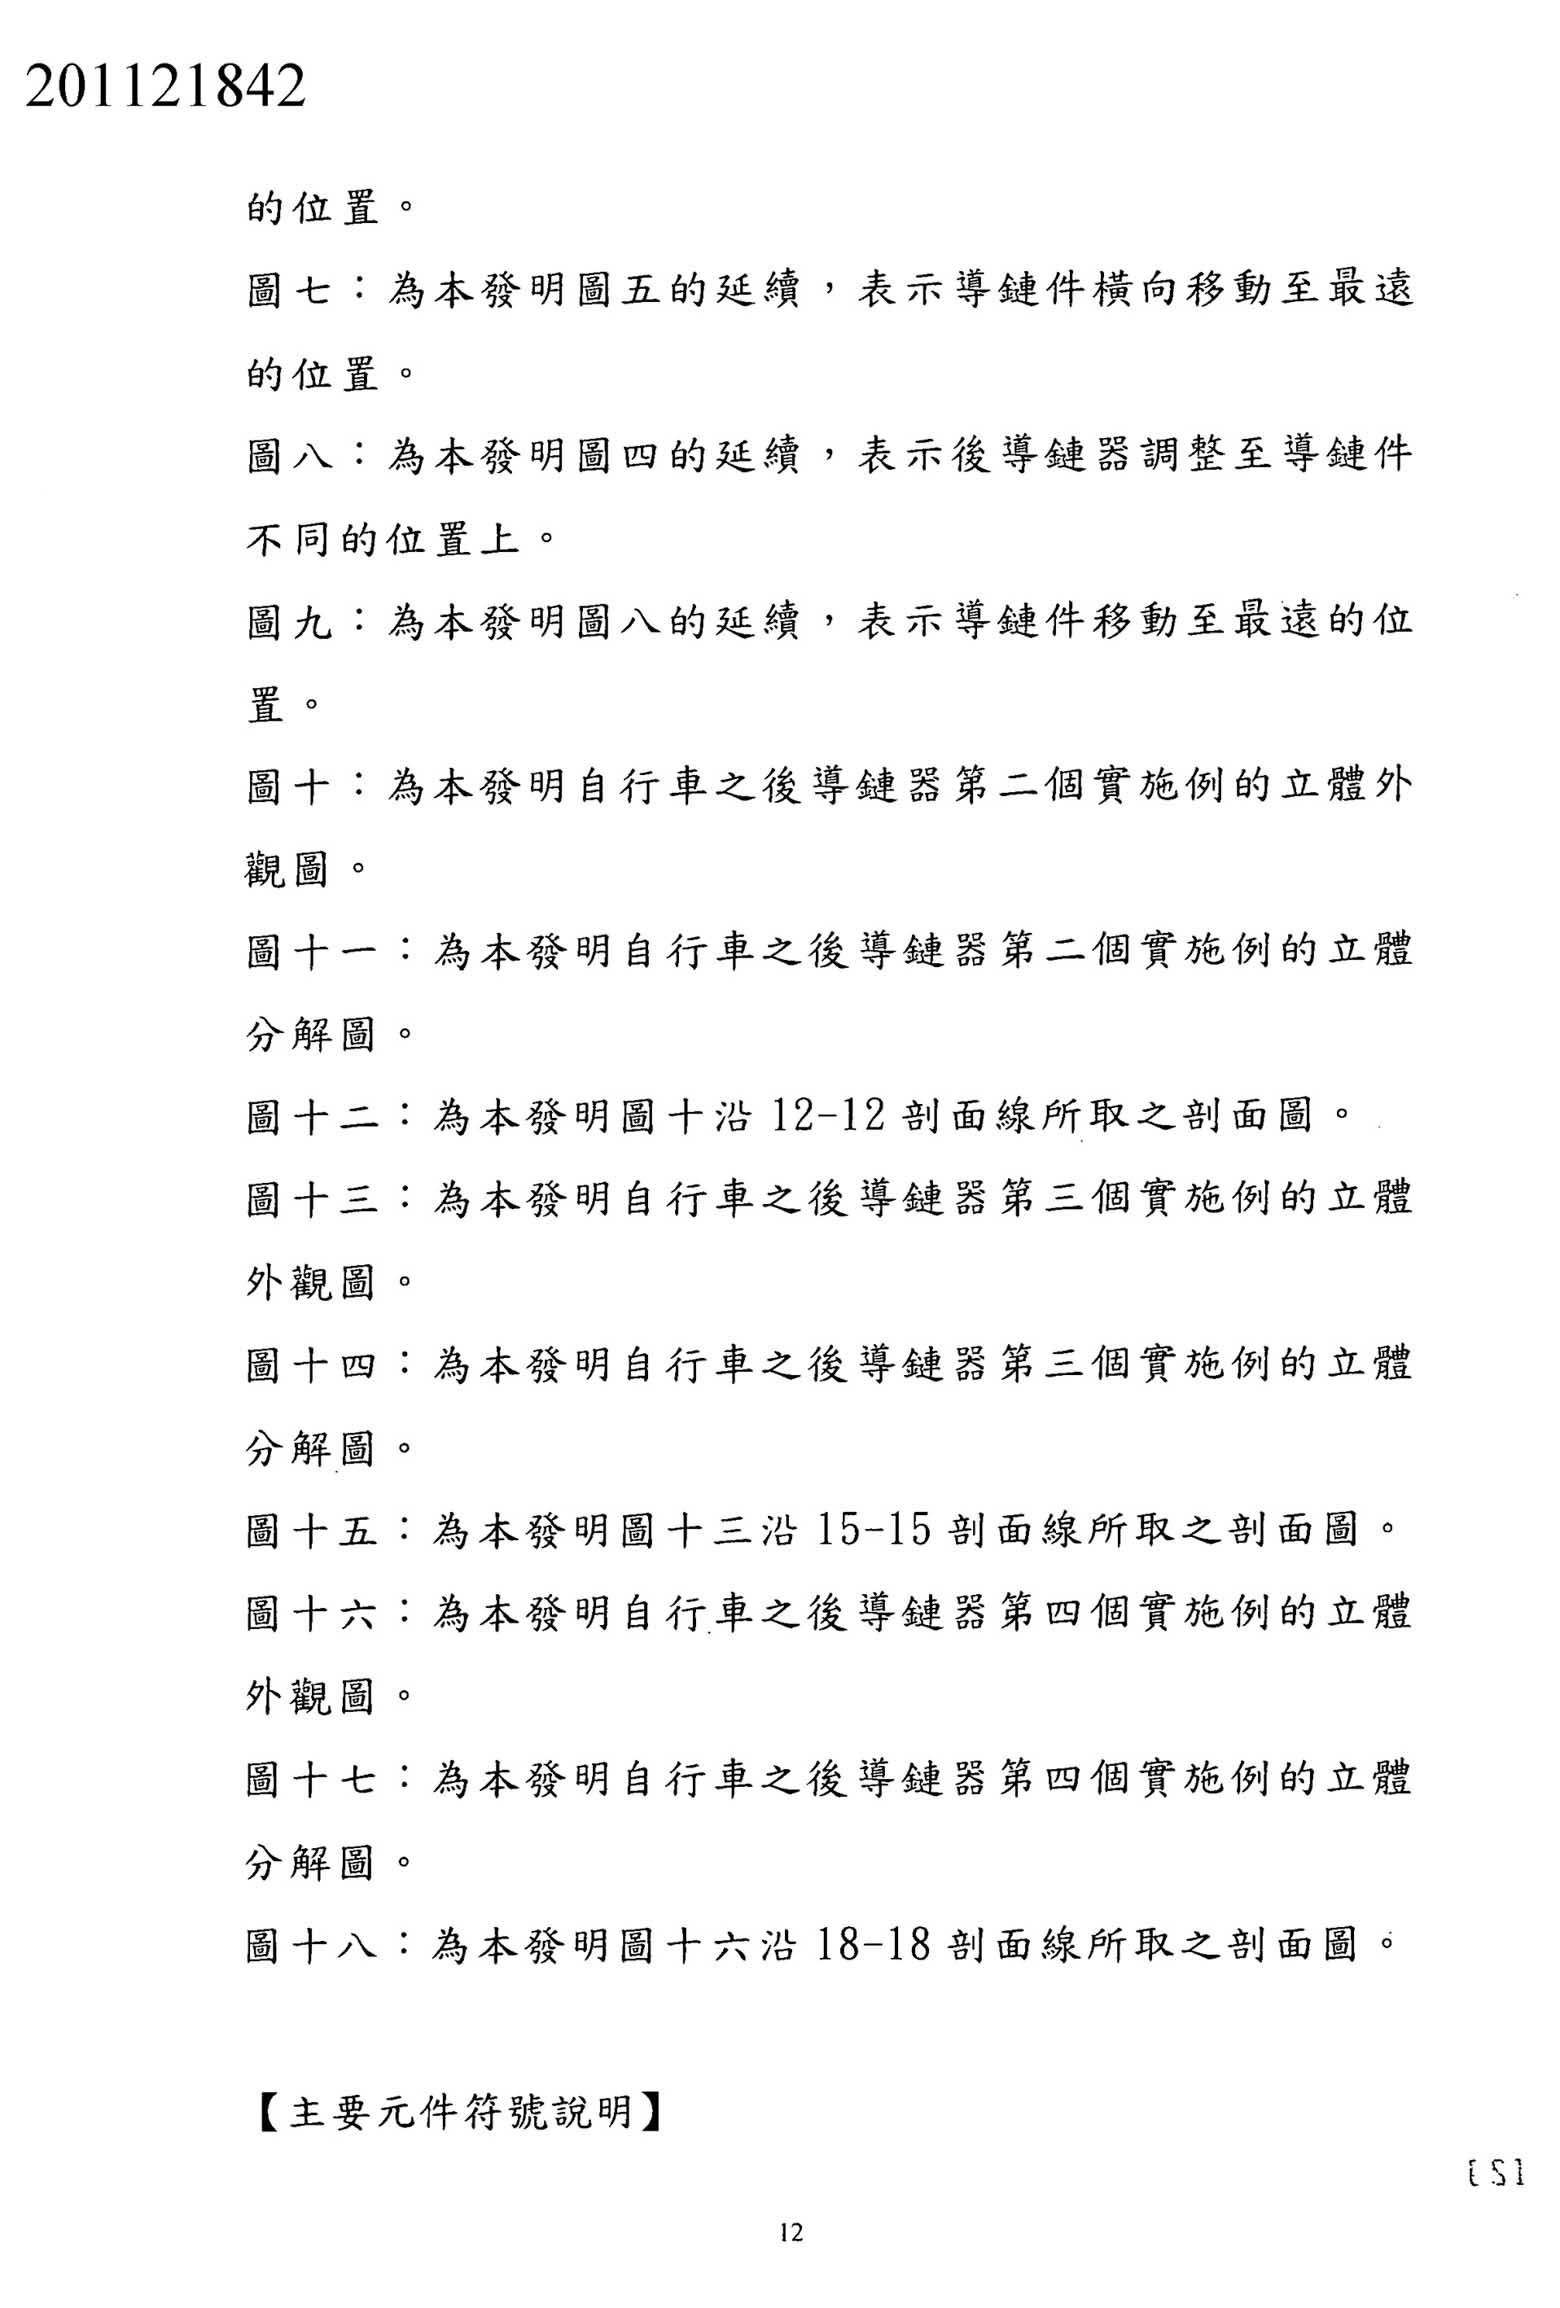 Taiwanese Patent 201121842 - FSA scan 12 main image